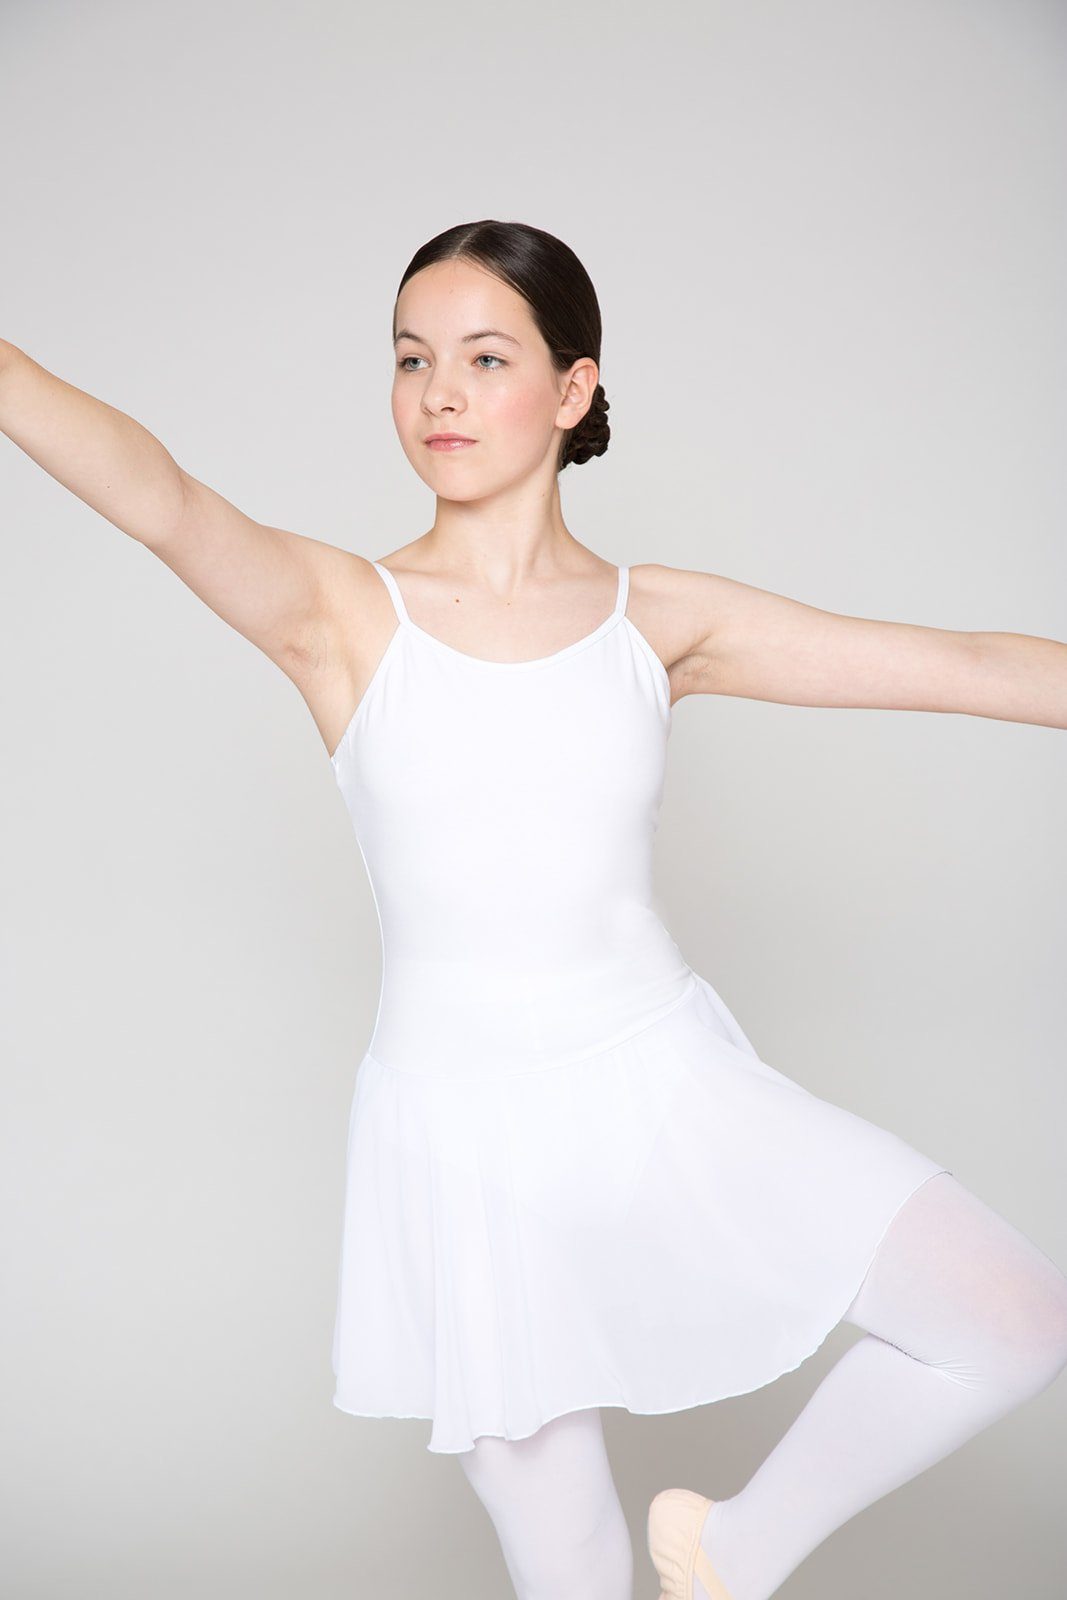 tanzmuster Chiffonkleid Ballettkleid mit weiß Mädchen Spaghettiträgern Ballettbody mit Maggie Chiffon Röckchen